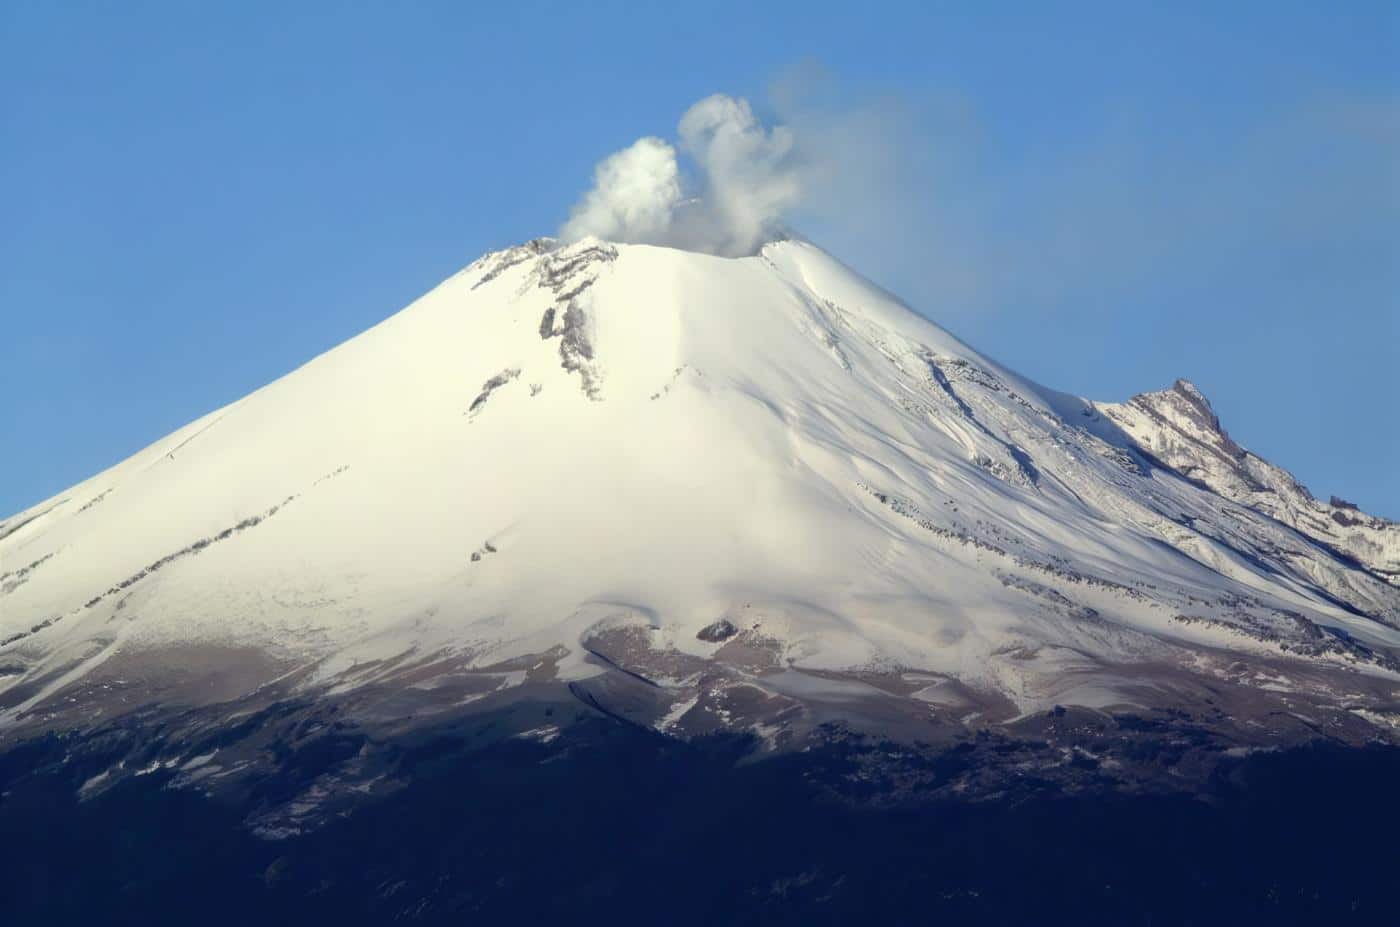 Volcan Popocatepetl - Departamento de Puebla